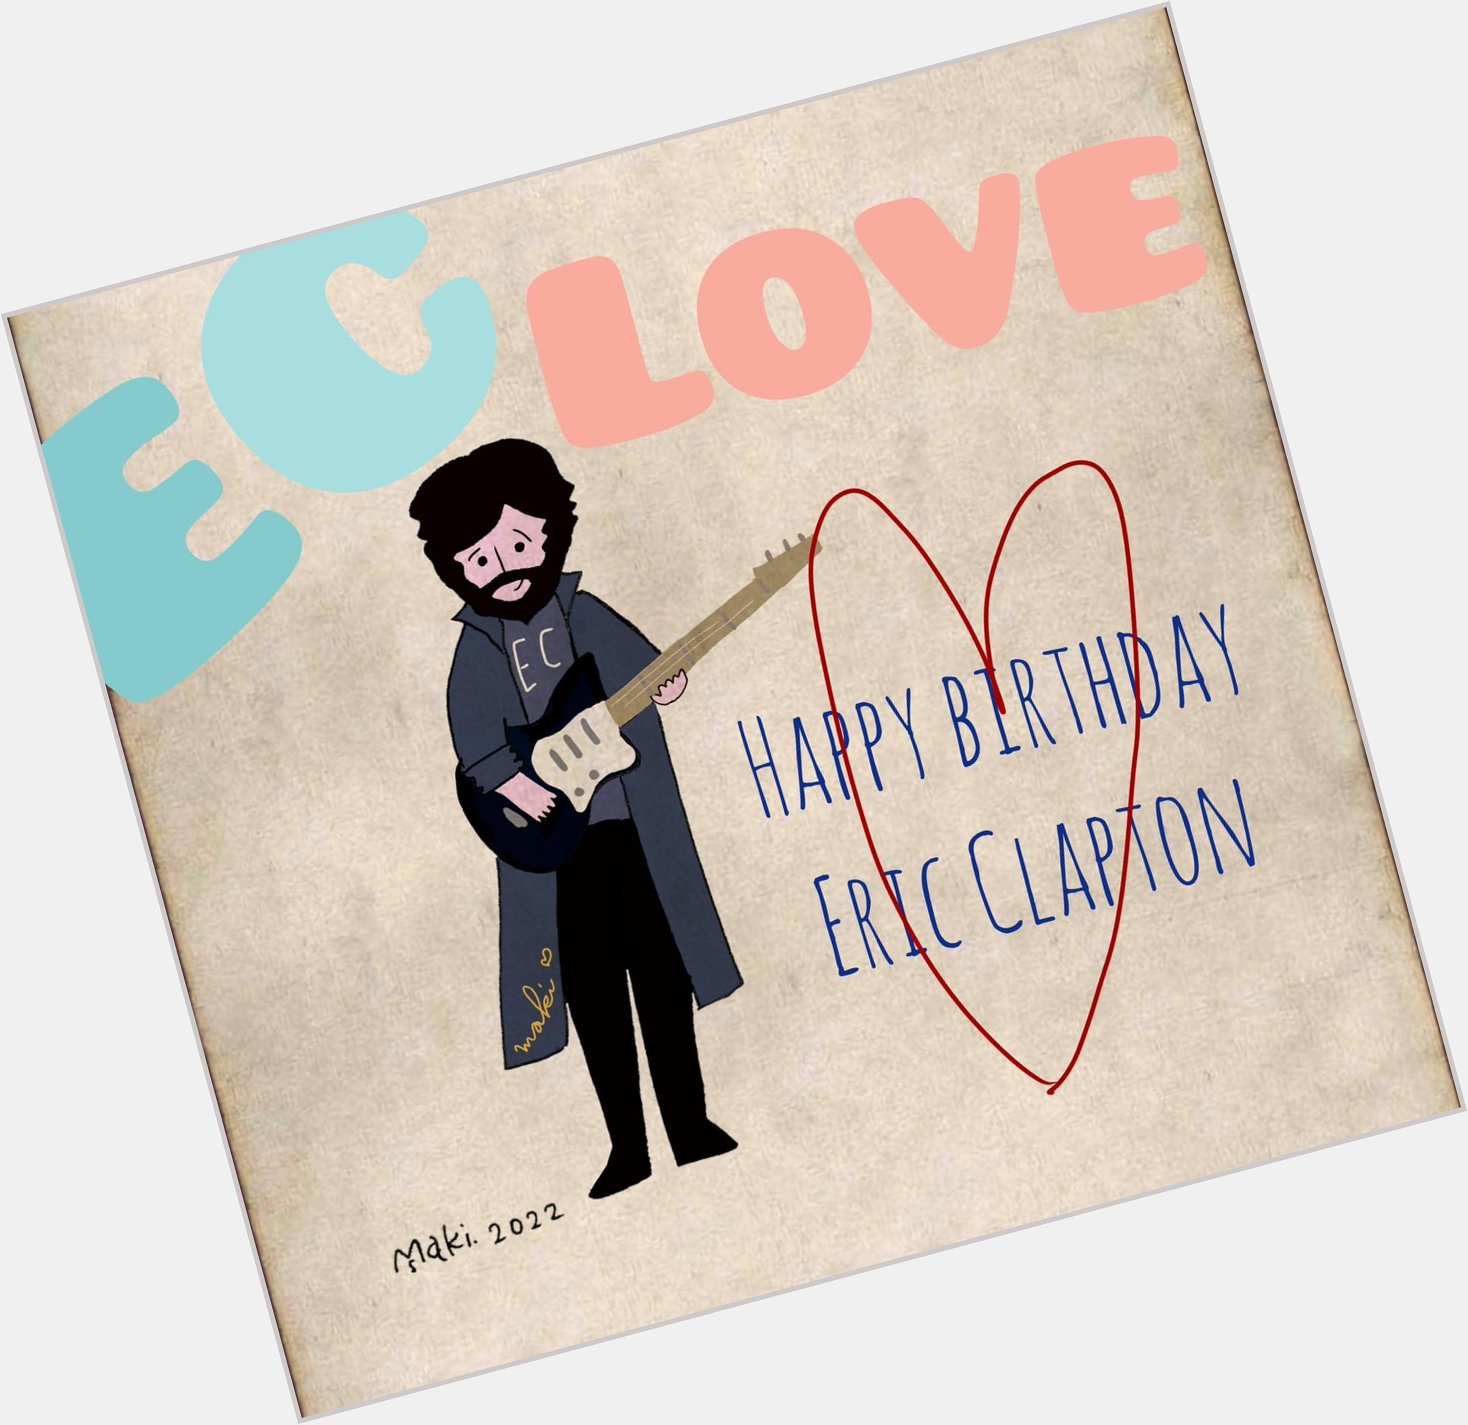  Happy Birthday, Eric Clapton  